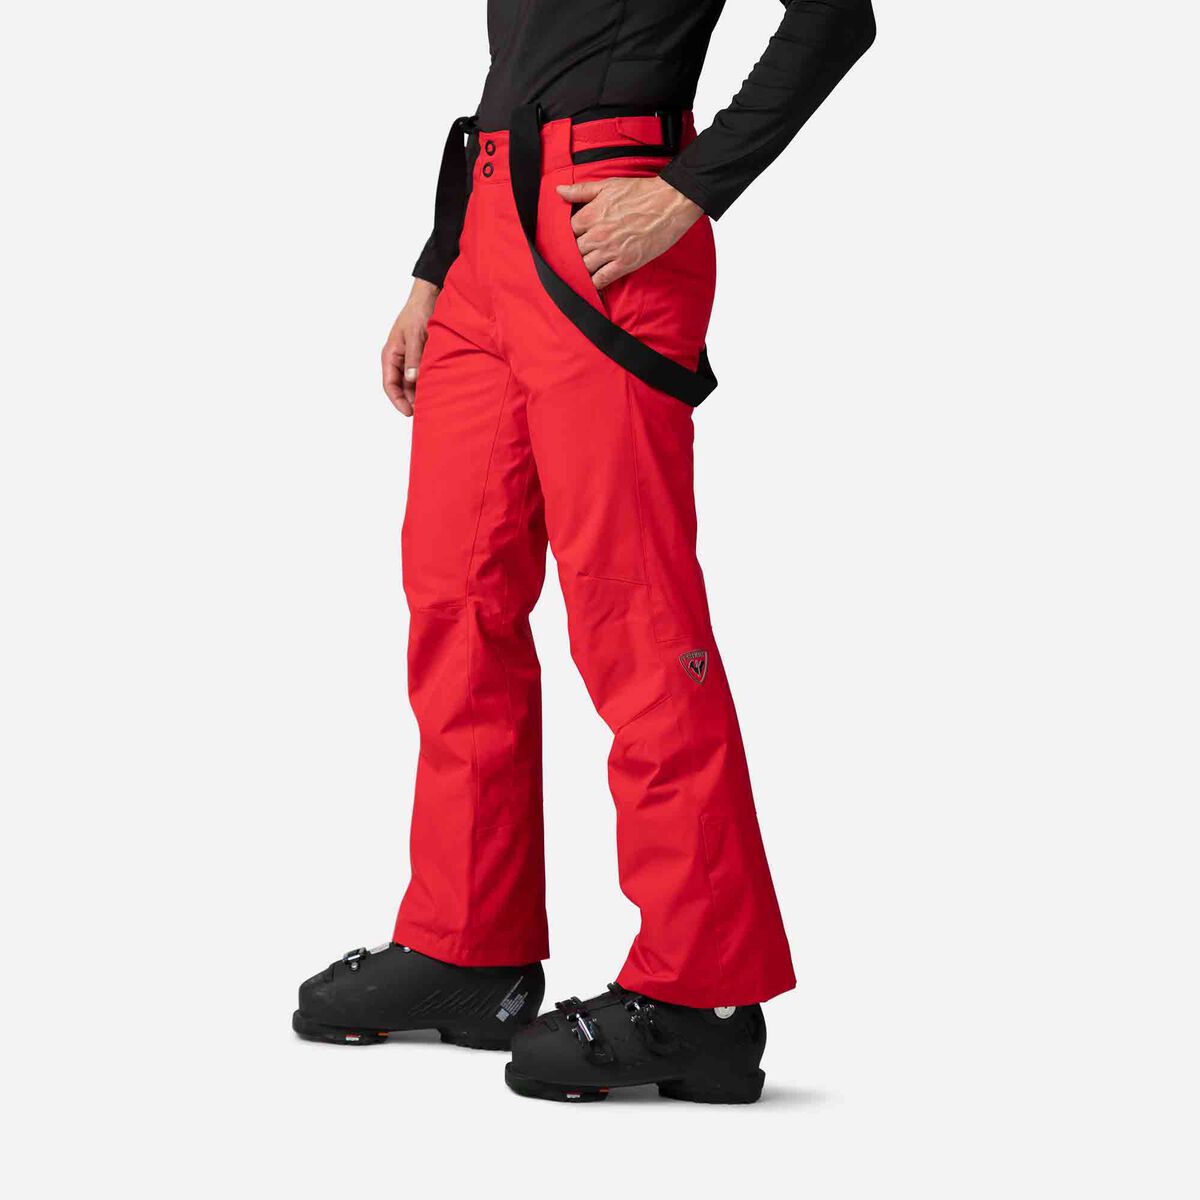 Rossignol Men's Ski Pants Red